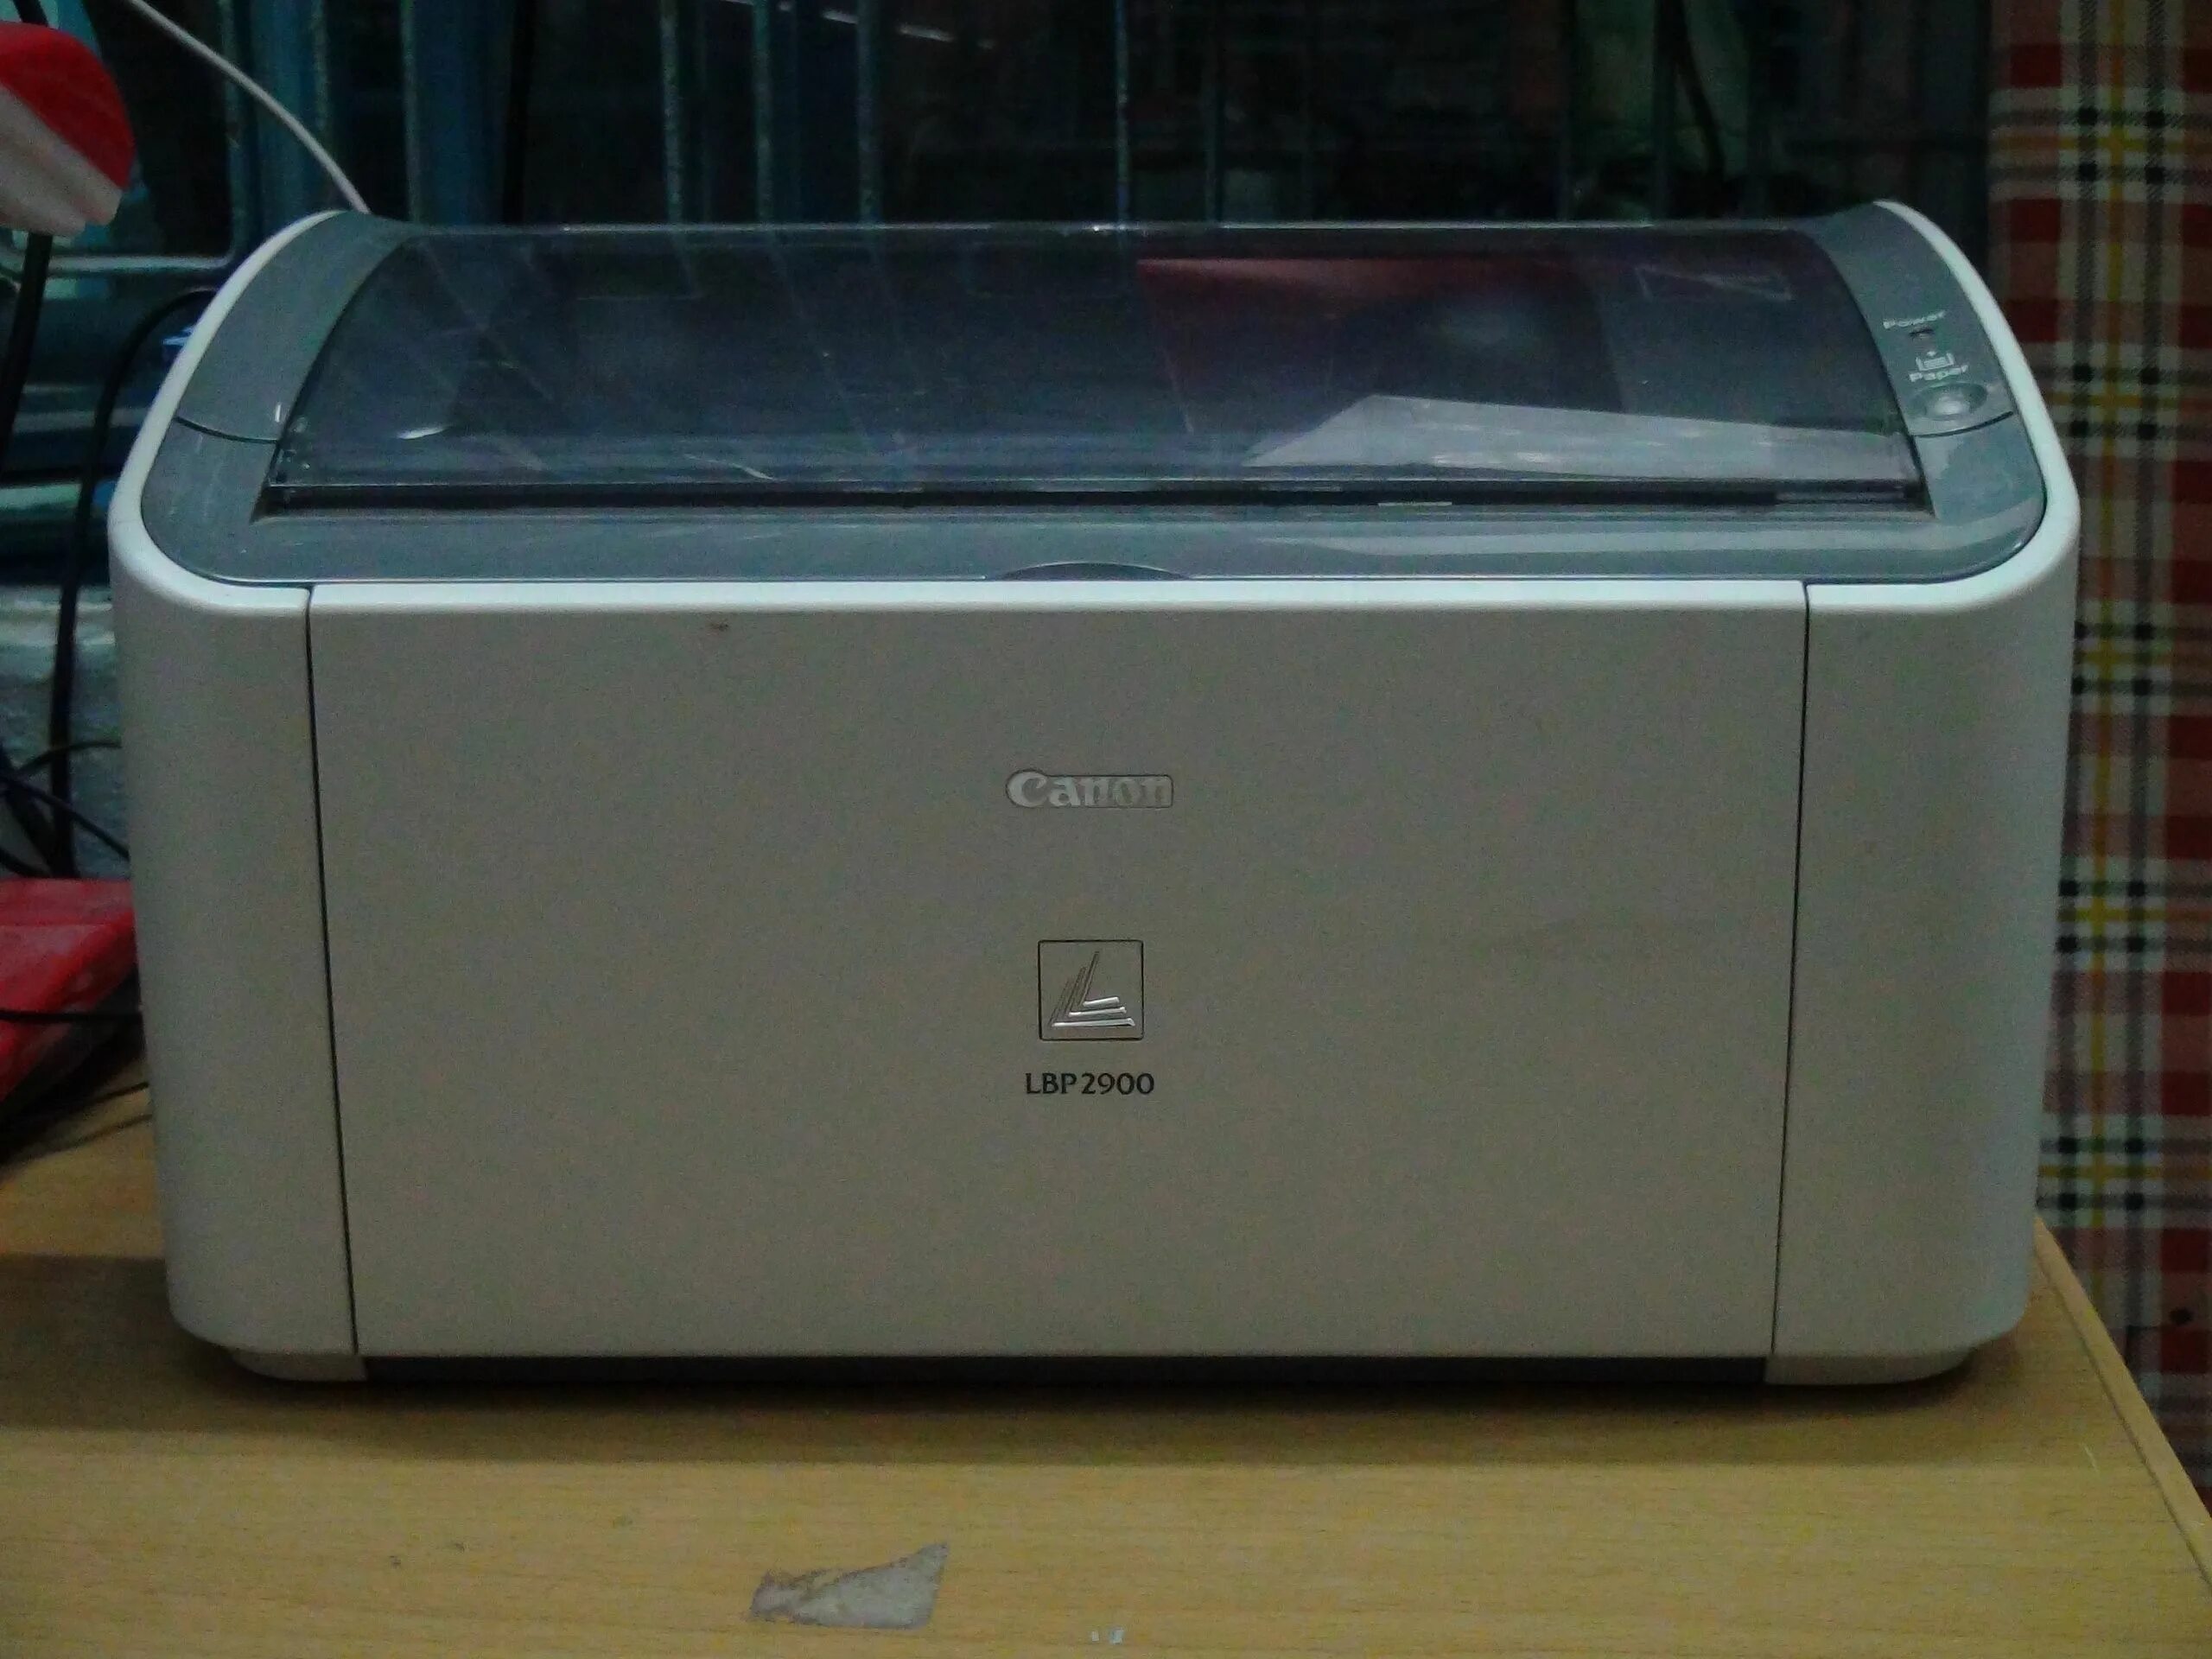 Лазерный принтер Canon LBP 2900. Принтер Canon 2900. Принтер Canon i-SENSYS lbp2900. Canon LBP 2900 Driver. Купить принтер lbp 2900